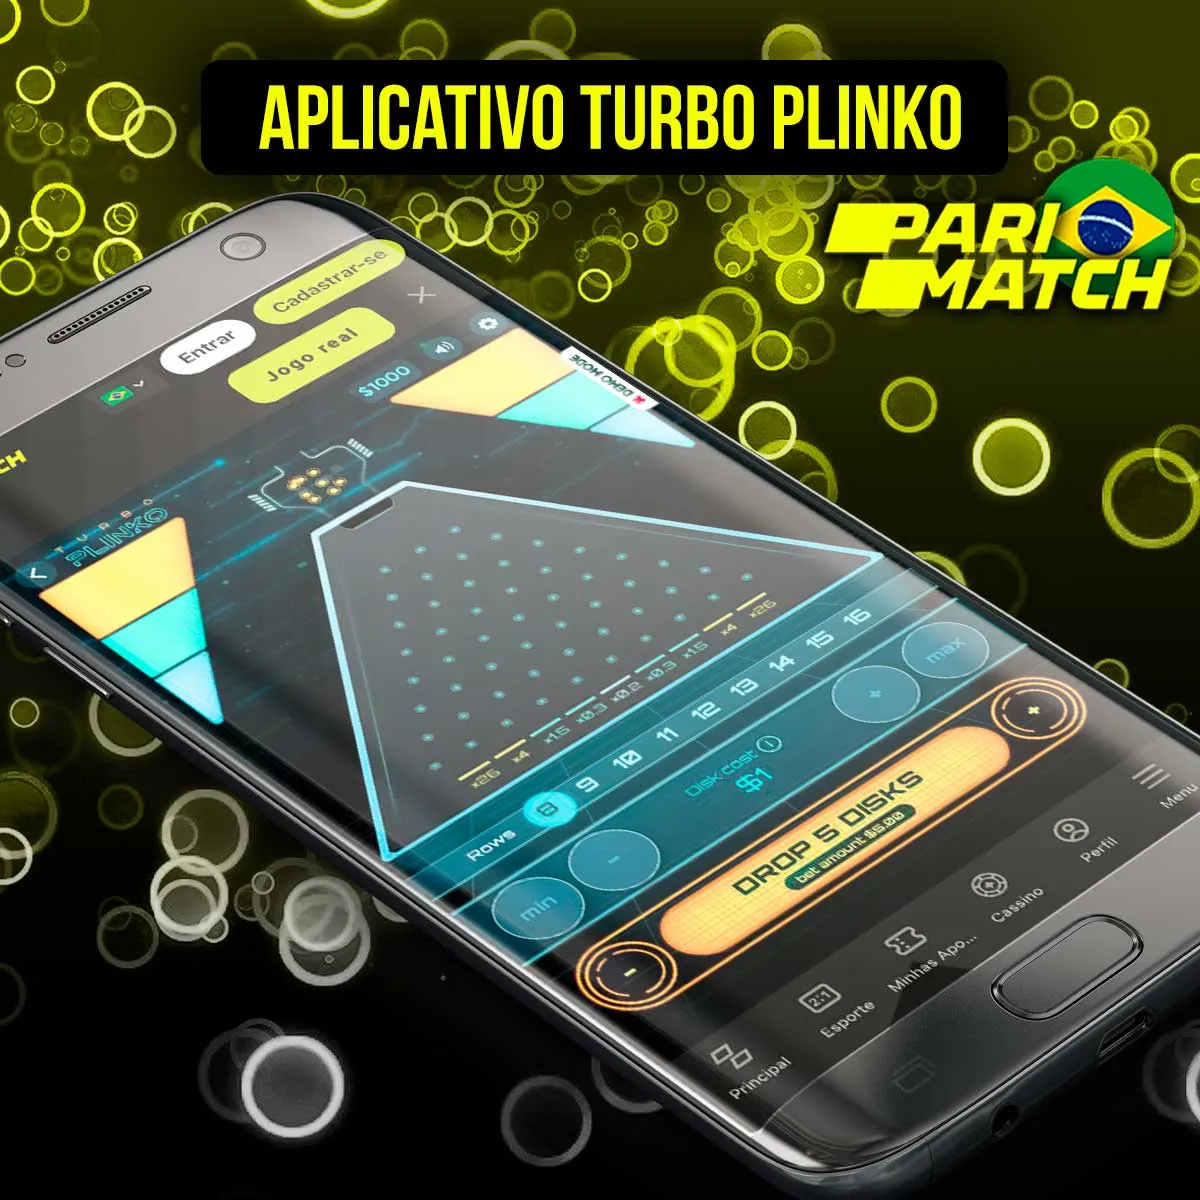 Aplicativo da Parimatch para jogar Turbo Plinco